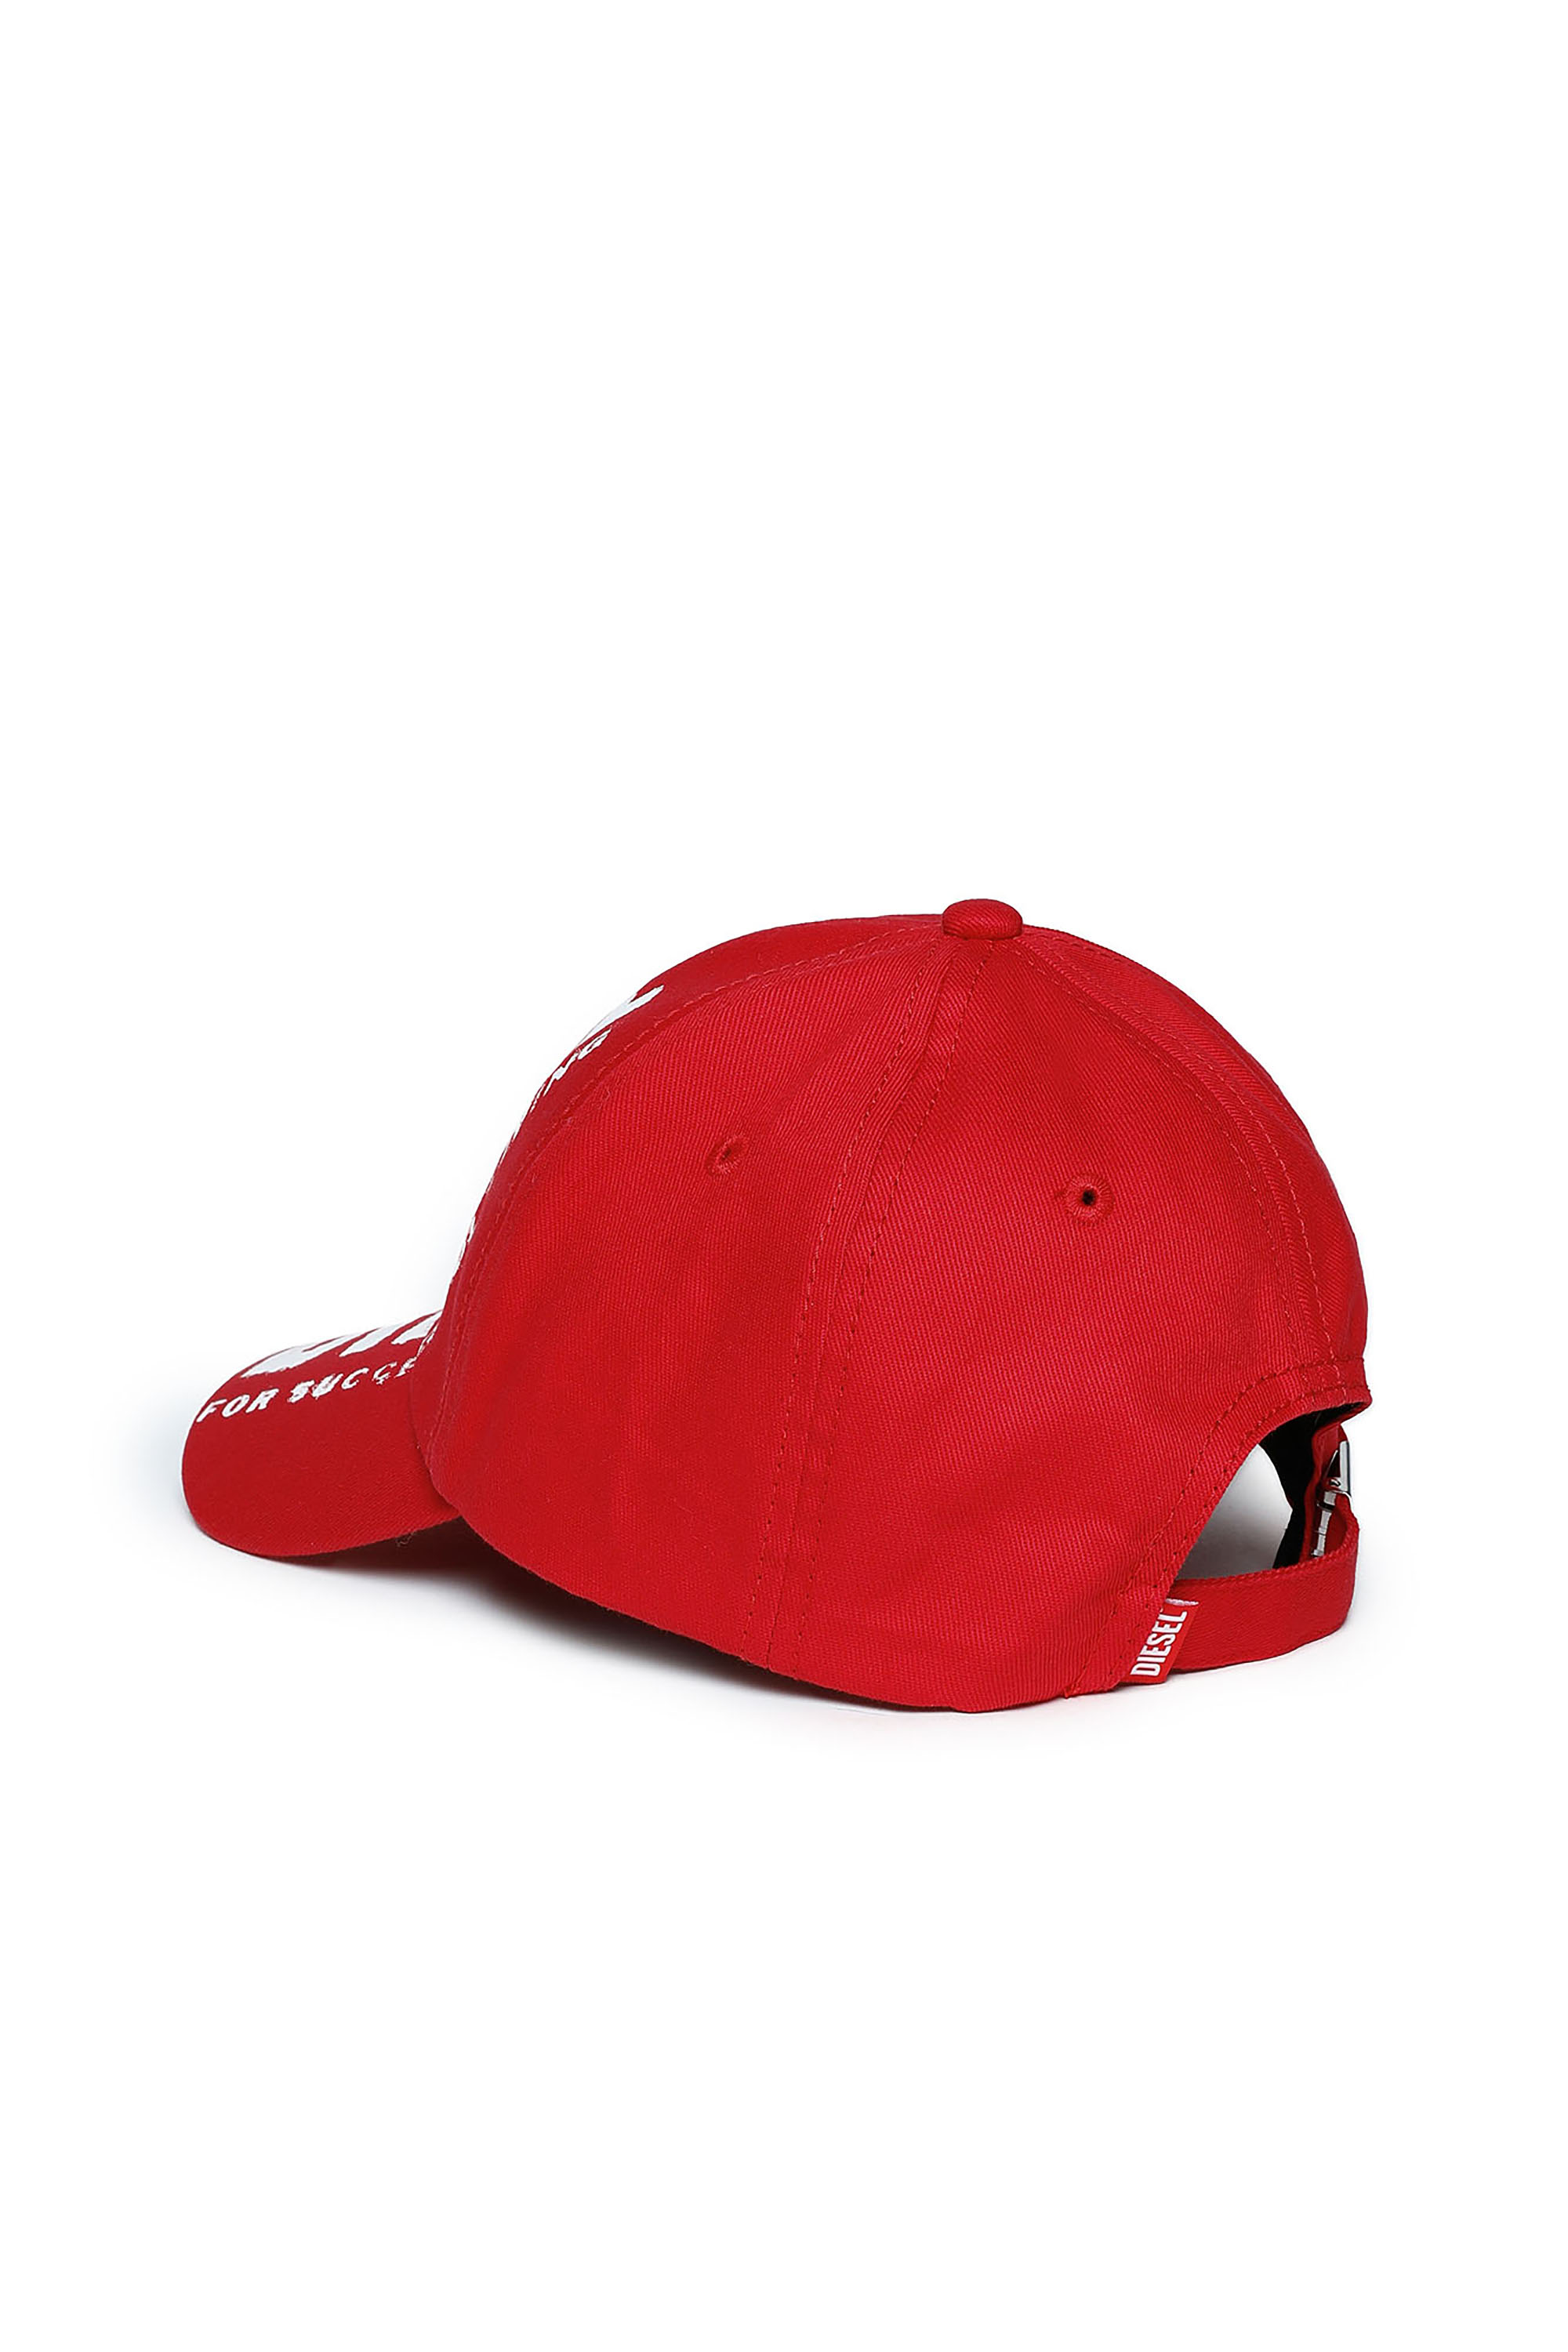 Cómo combinar una gorra de béisbol roja en 2016 (13 formas)